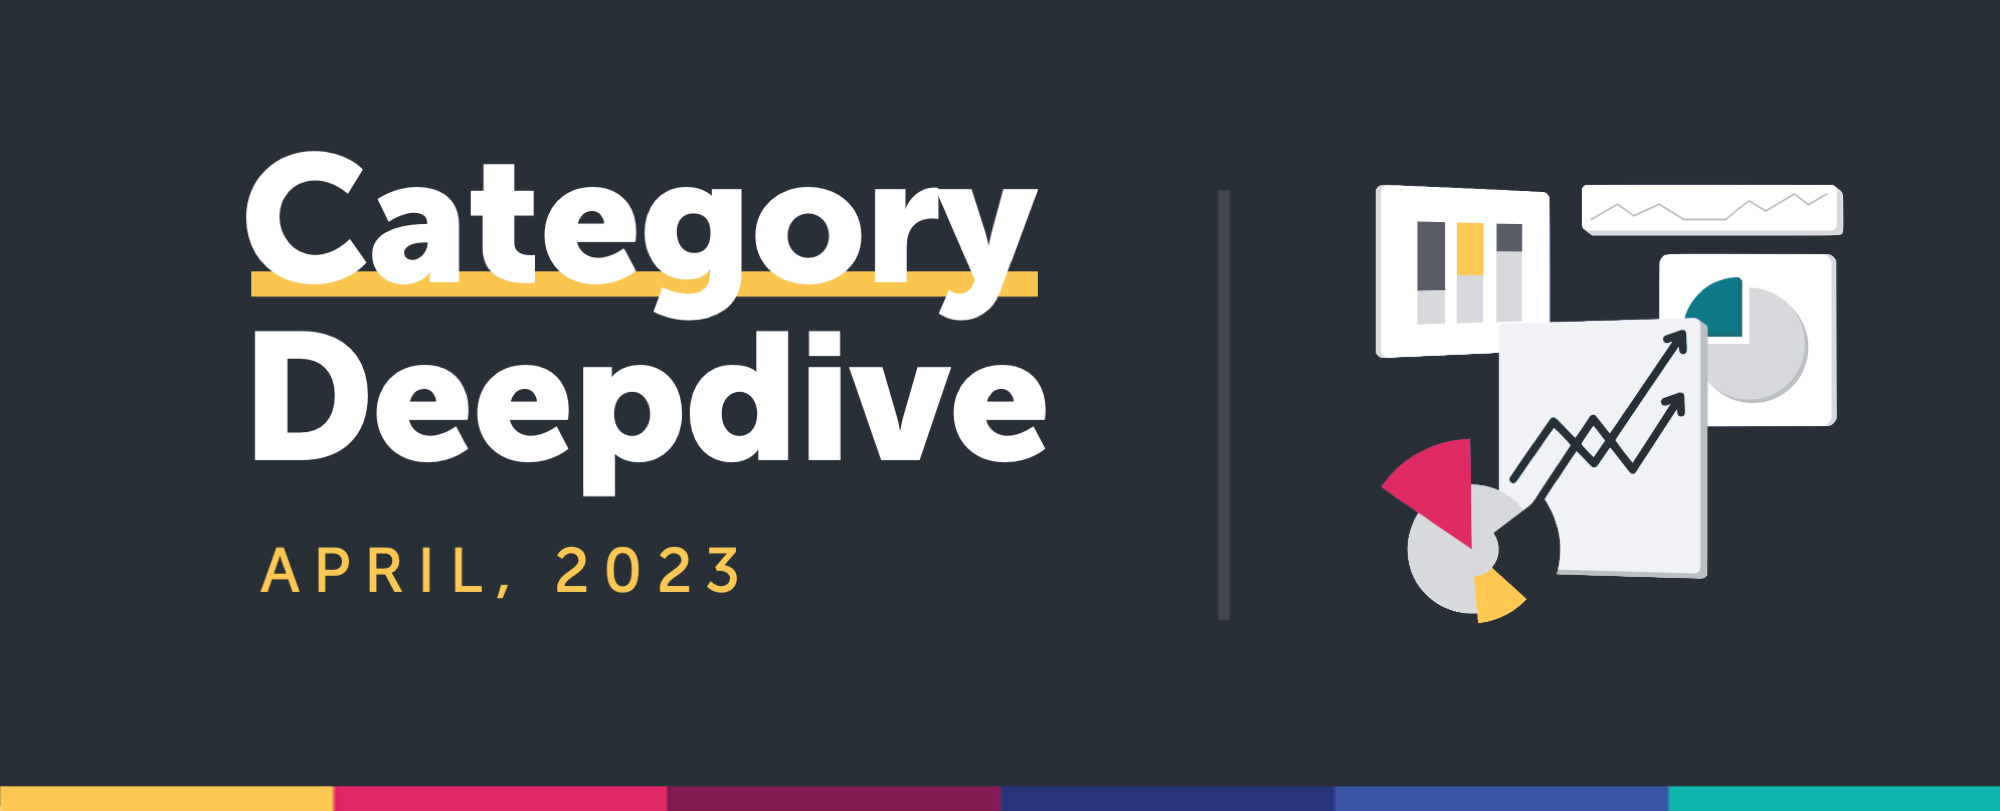 Category Deepdive: April 2023